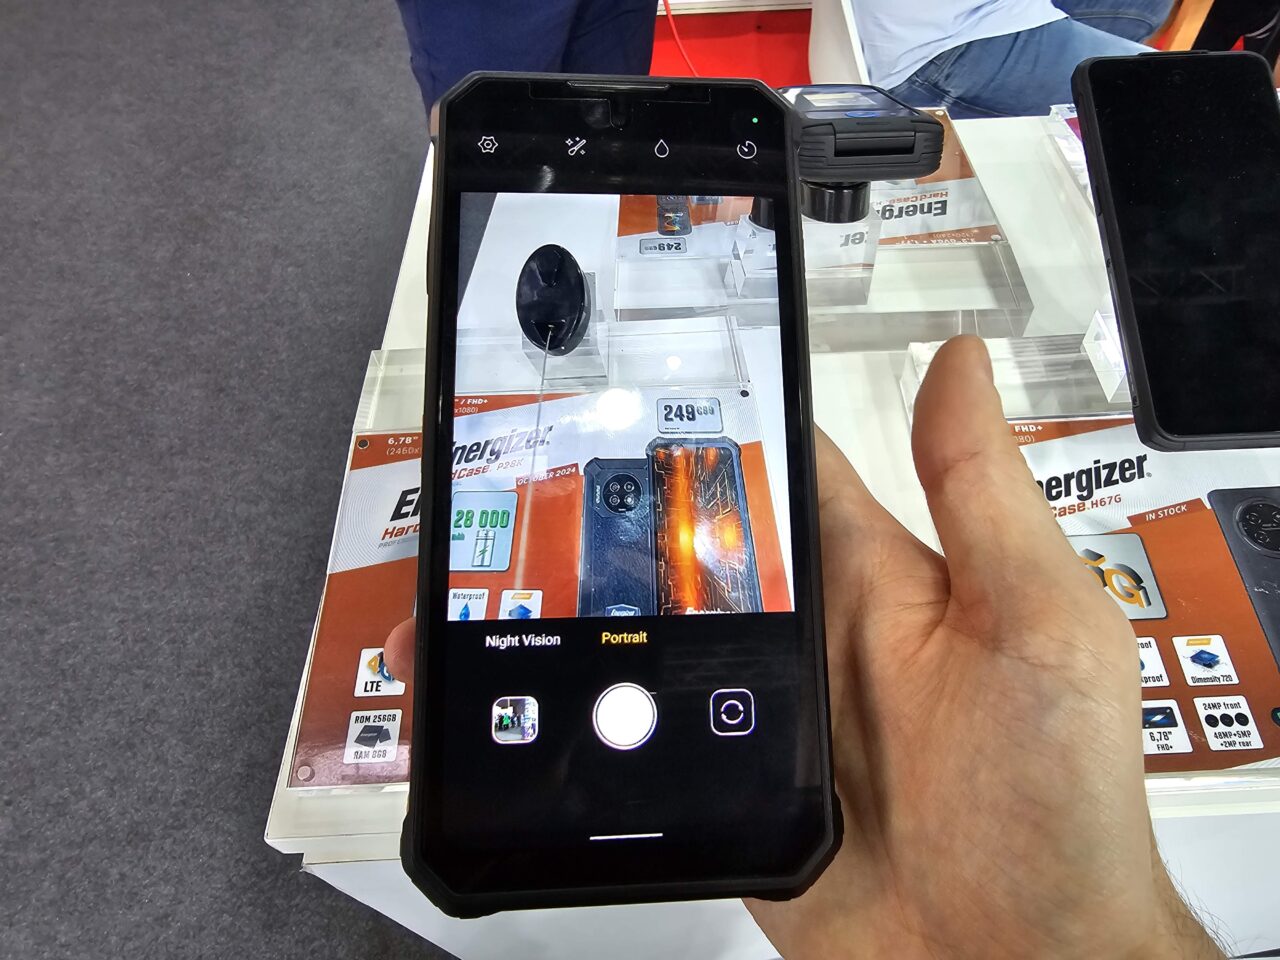 Dłoń trzymająca smartfon Energizer Hard Case P28K, którego ekran pokazuje wyświetlacz z ceną telefonu marki Energizer.